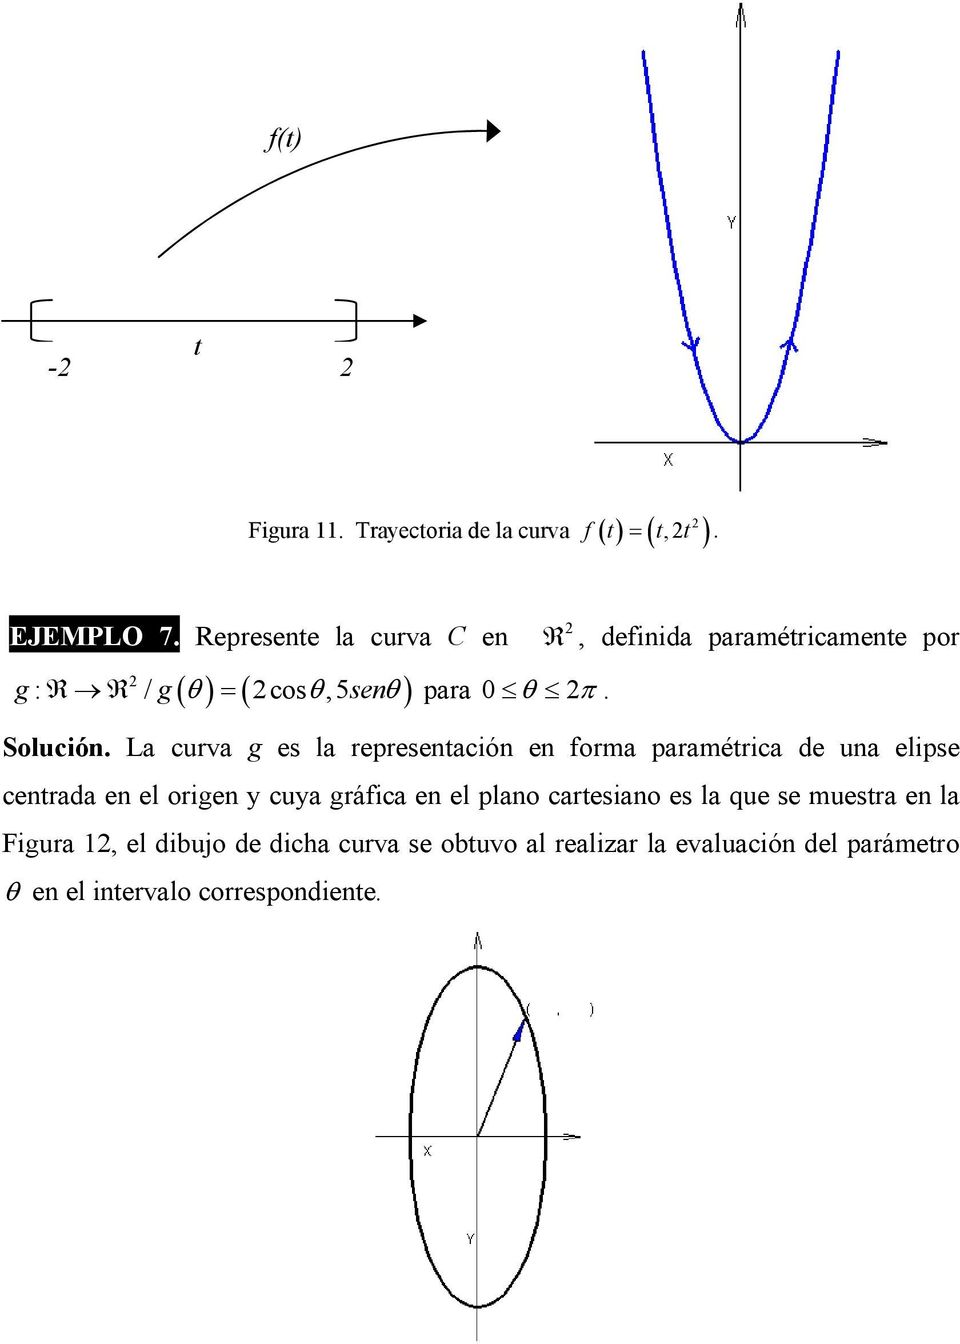 La curva g es la represenación en forma paramérica de una elipse cenrada en el origen y cuya gráfica en el